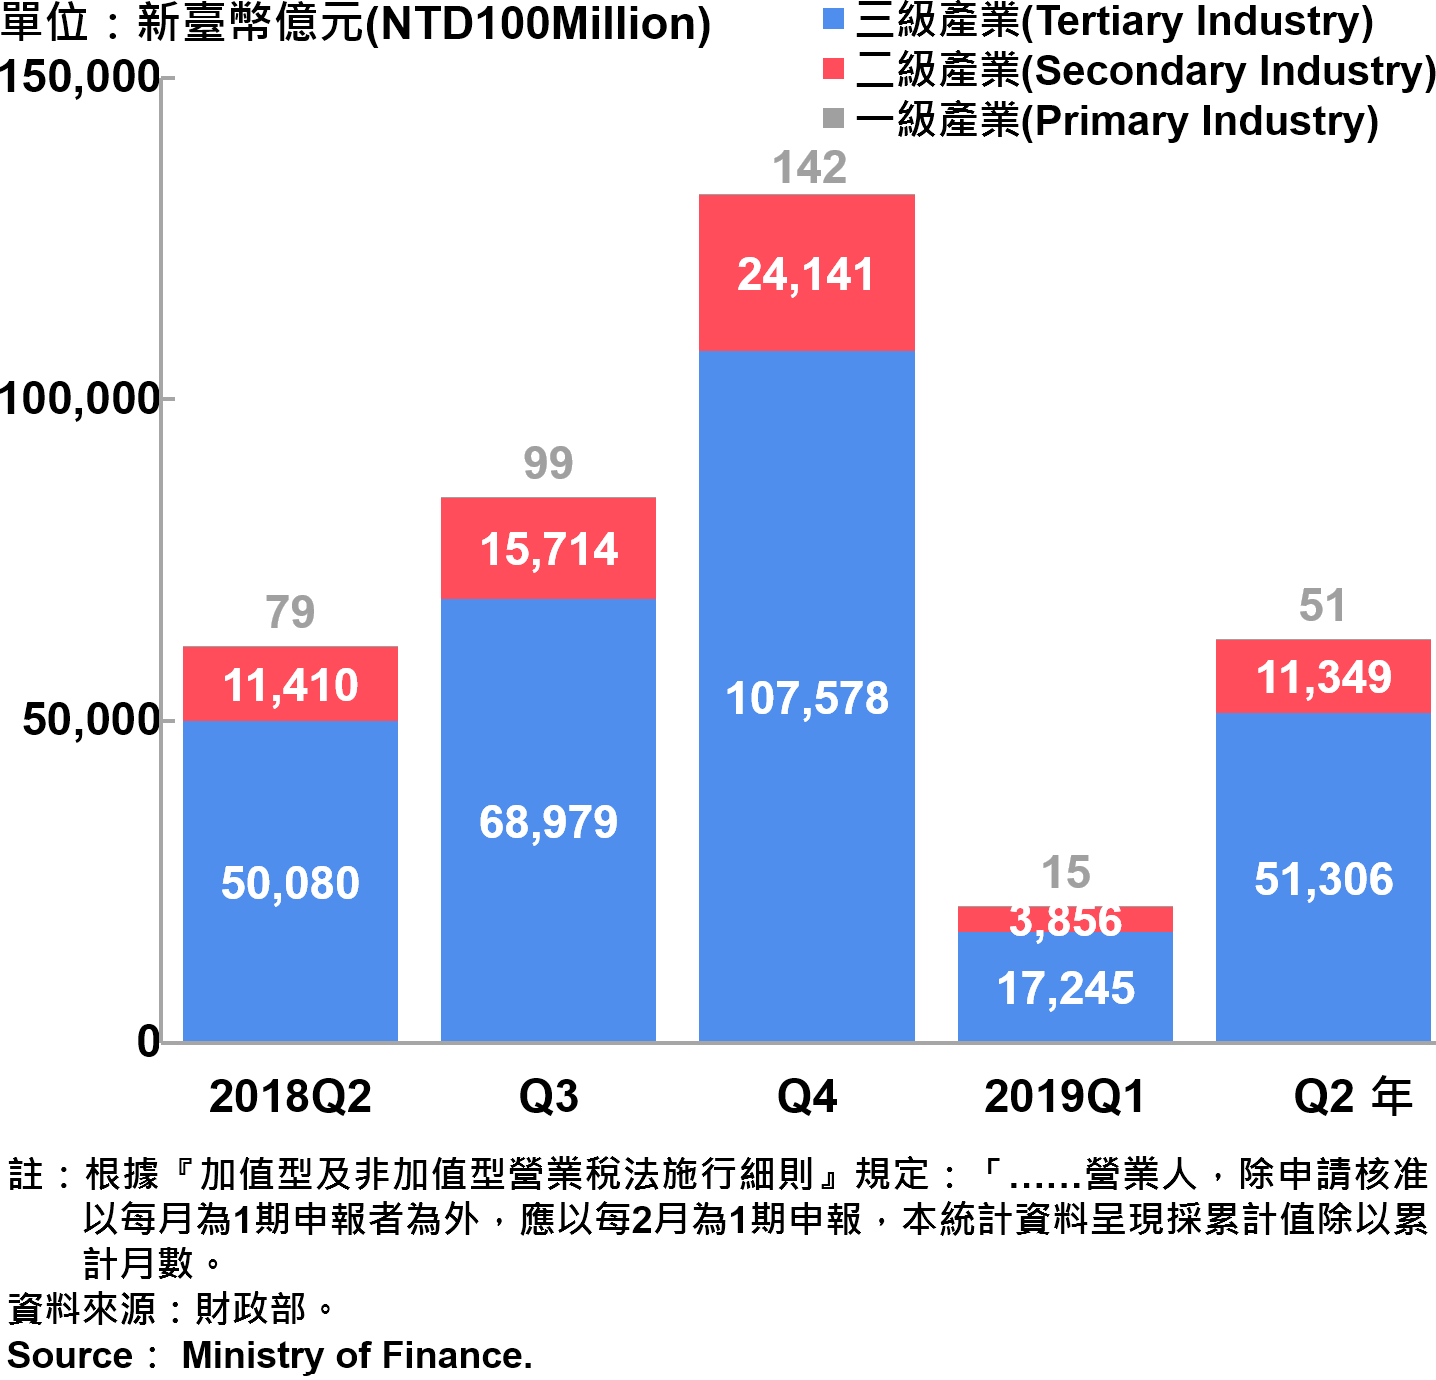 臺北市一二三級產業銷售額—2019Q2 Sales of Primary , Secondary and Tertiary Industry in Taipei City—2019Q2